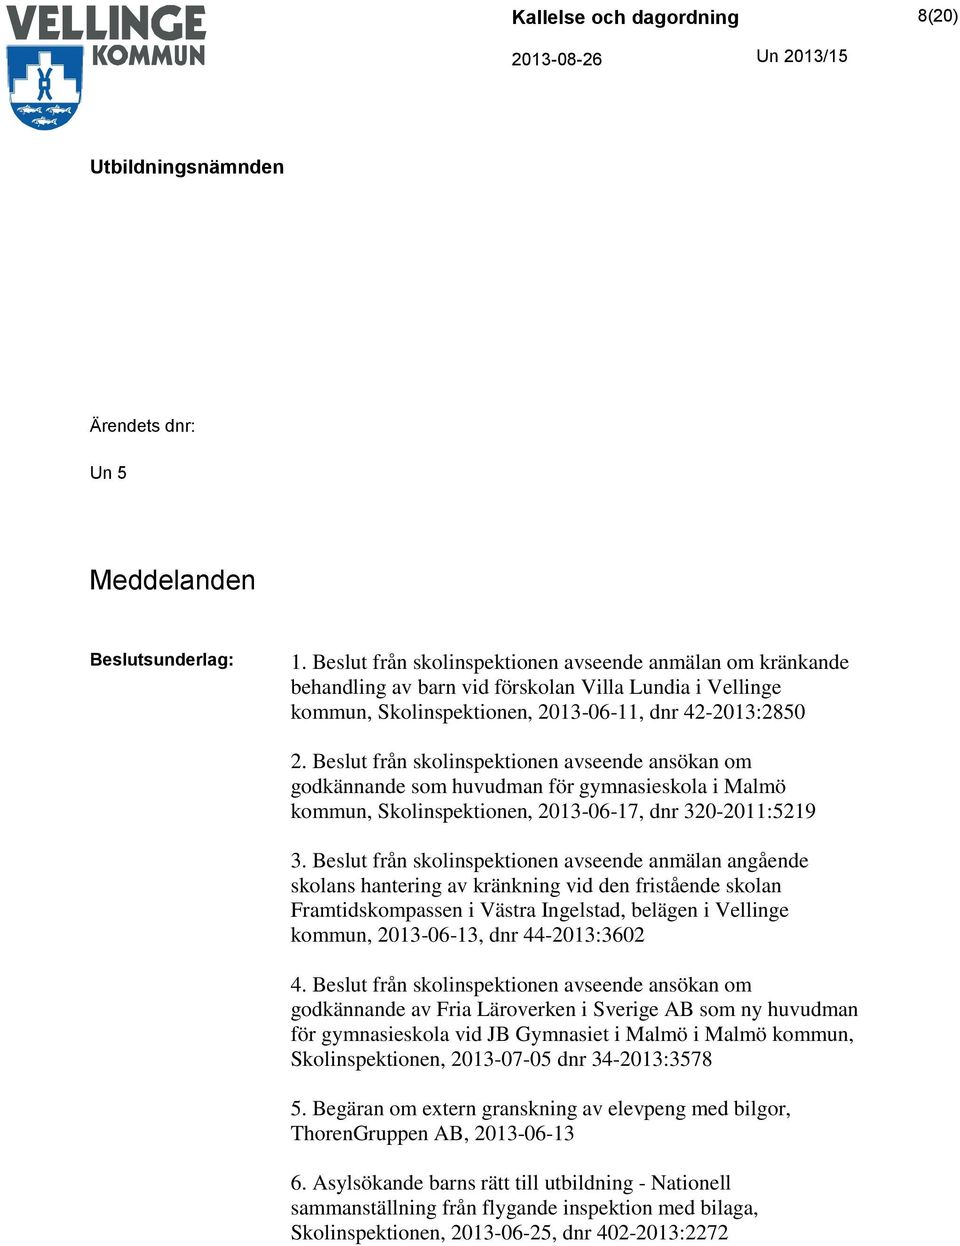 Beslut från skolinspektionen avseende ansökan om godkännande som huvudman för gymnasieskola i Malmö kommun, Skolinspektionen, 2013-06-17, dnr 320-2011:5219 3.